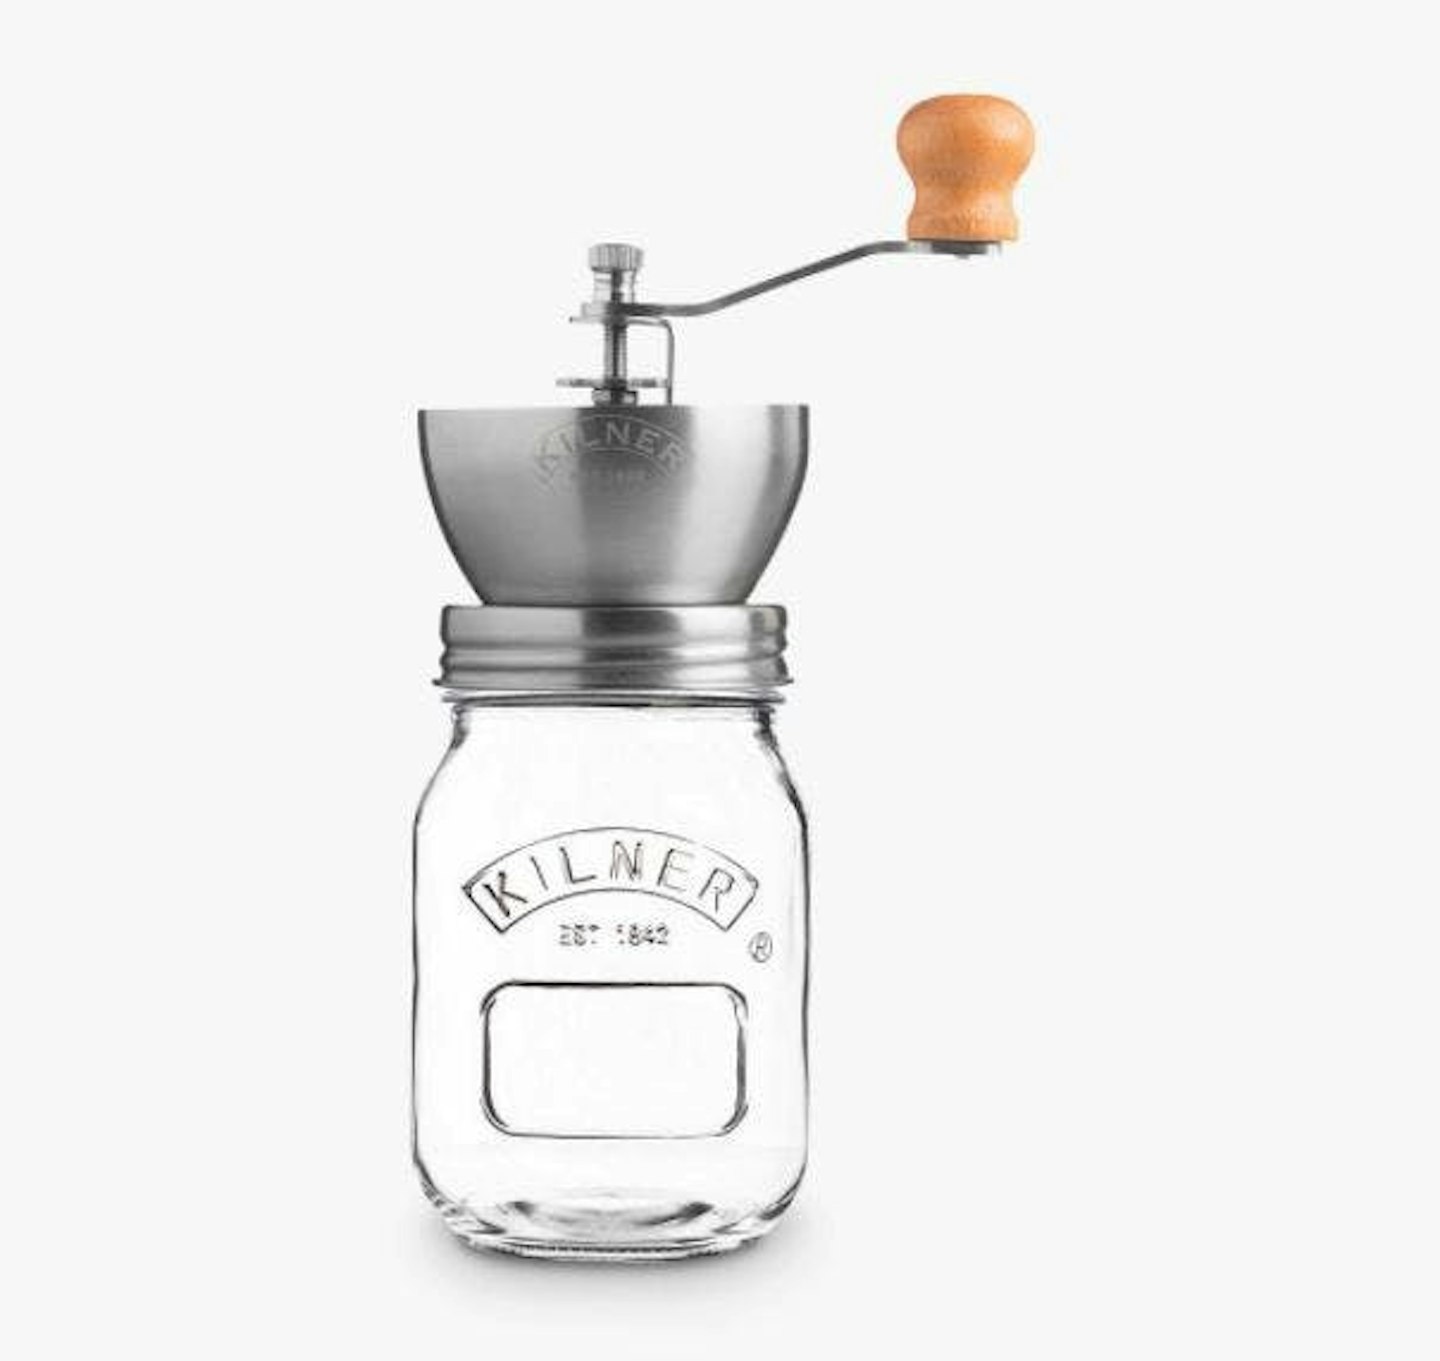 Best coffee grinders: Kilner Coffee Grinder and Storage Jar Set